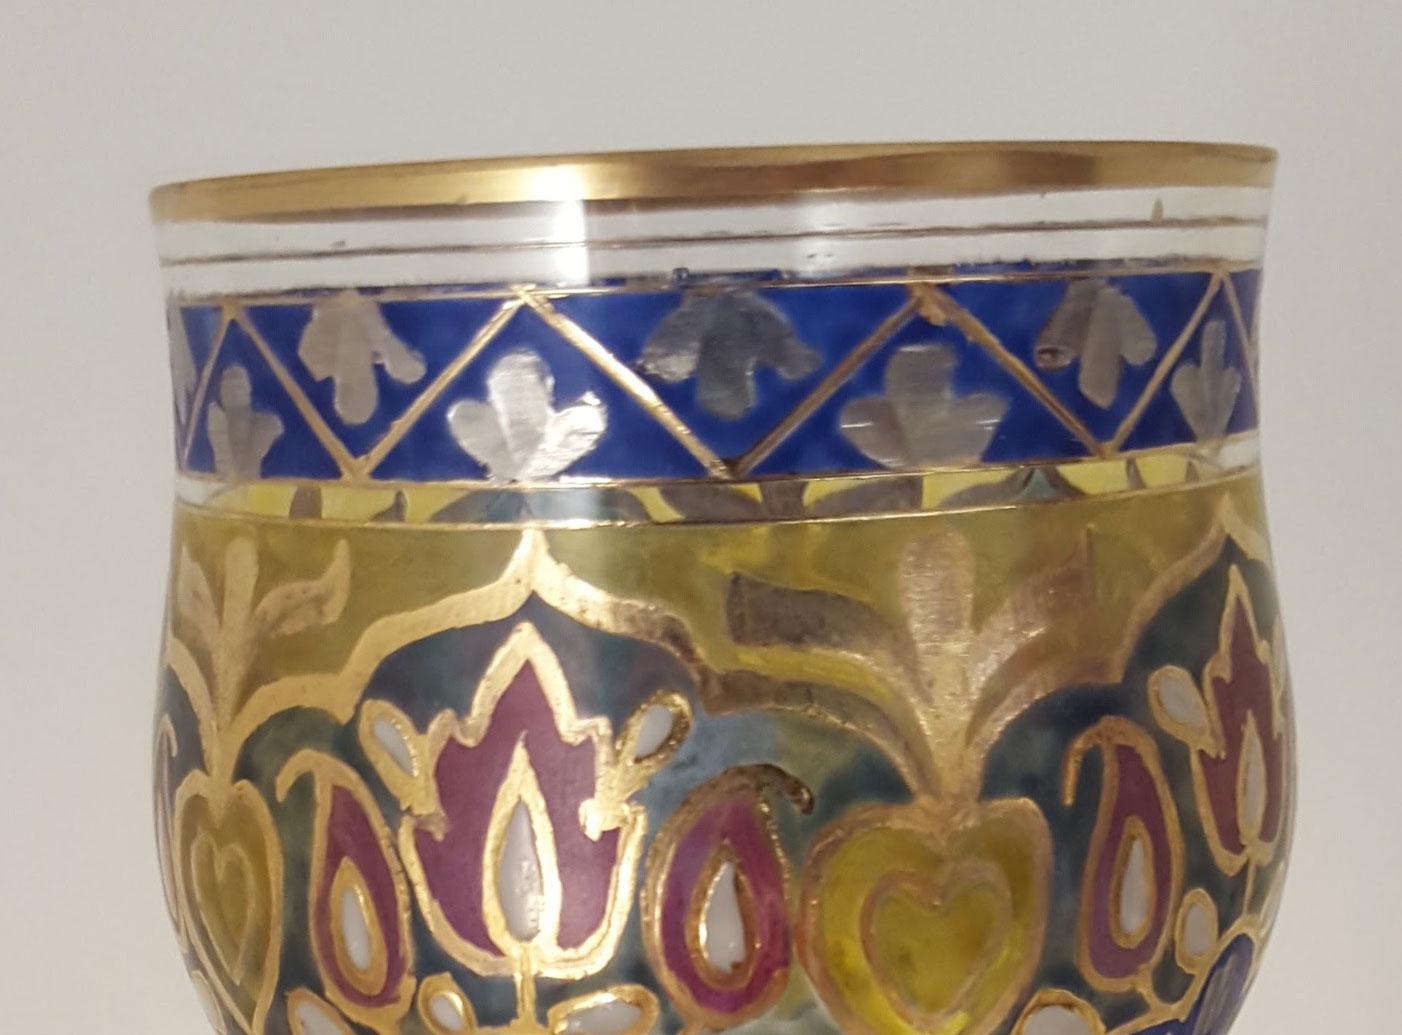 Stengelglas „Jodhpur“, JosepFritz Heckert, Petersdorf, um 1900

H 19,8 cm, Durchmesser 7,5 cm